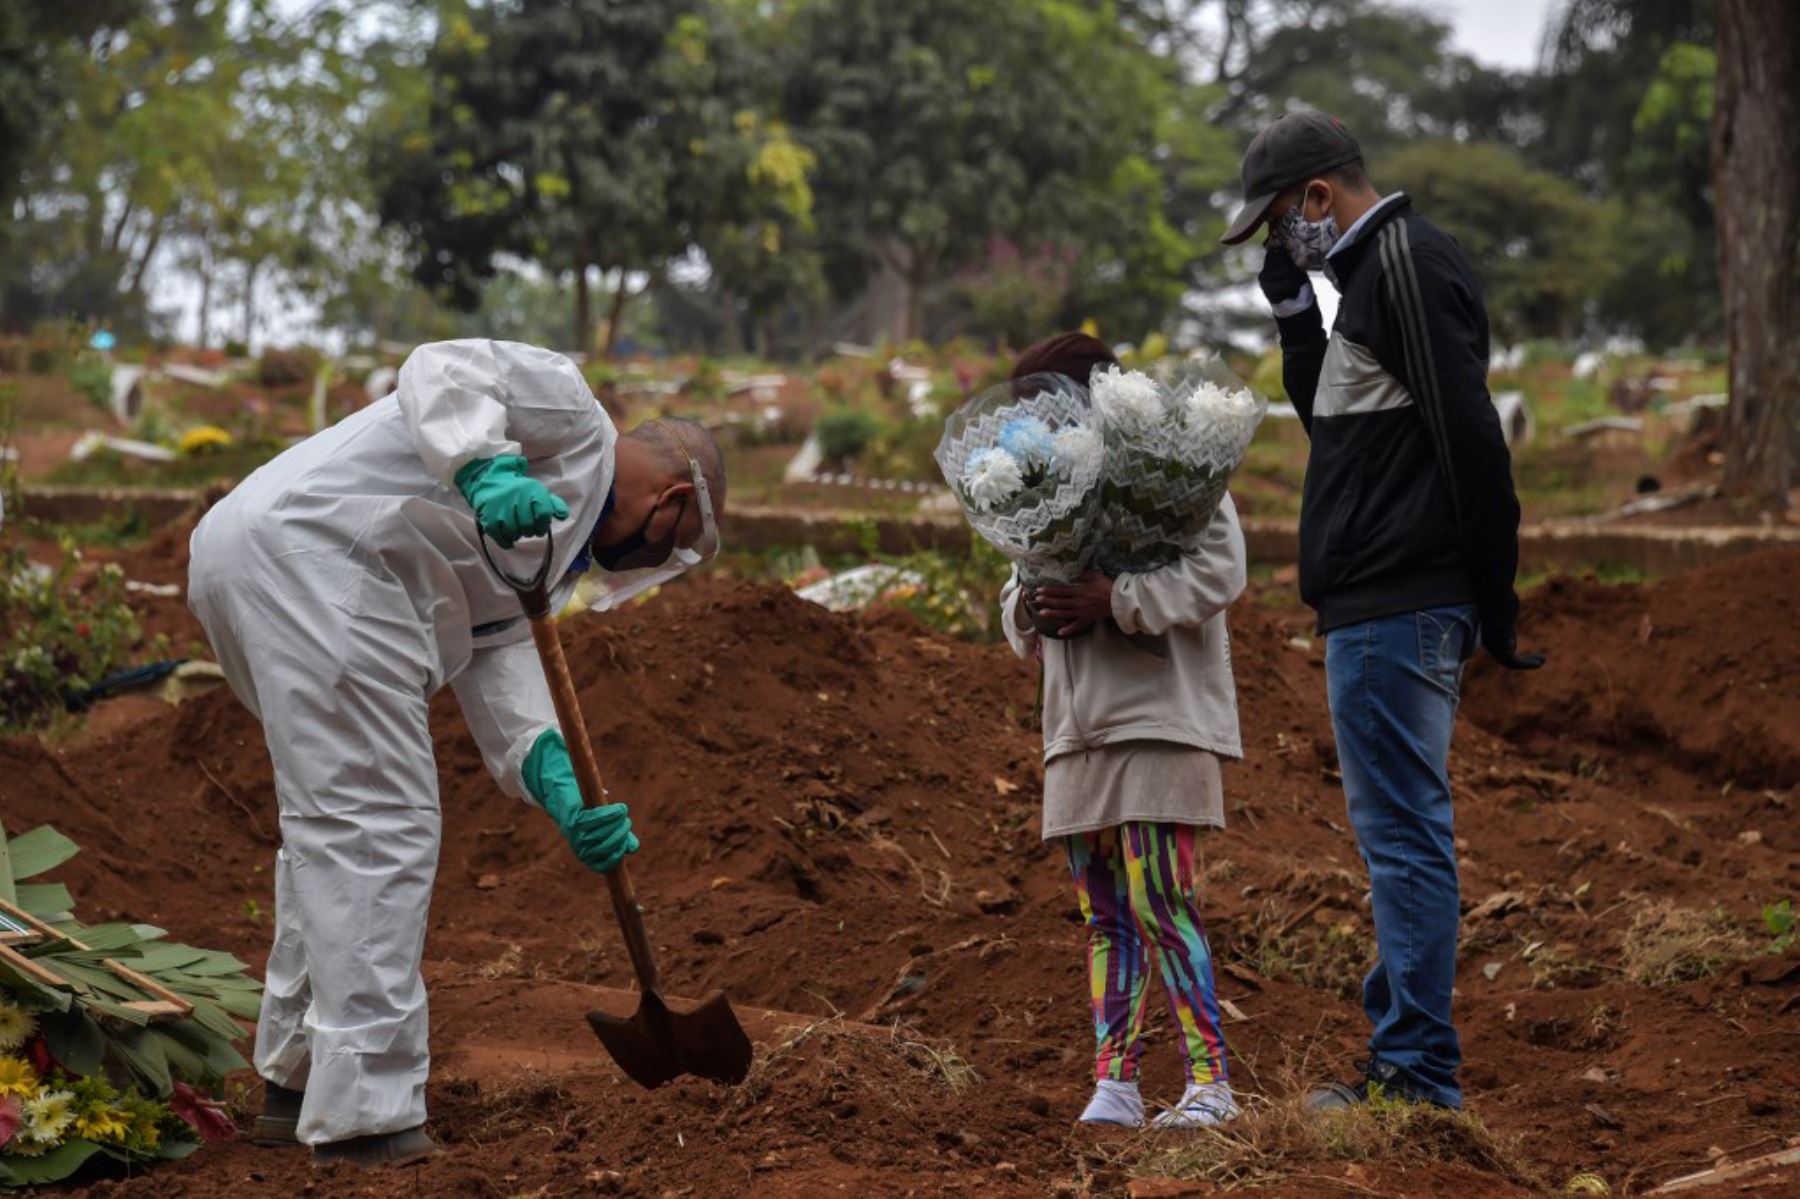 Un empleado cava junto a familiares de una persona que murió de covid -19 en el cementerio de Vila Formosa, en las afueras de Sao Paulo.
Foto: AFP